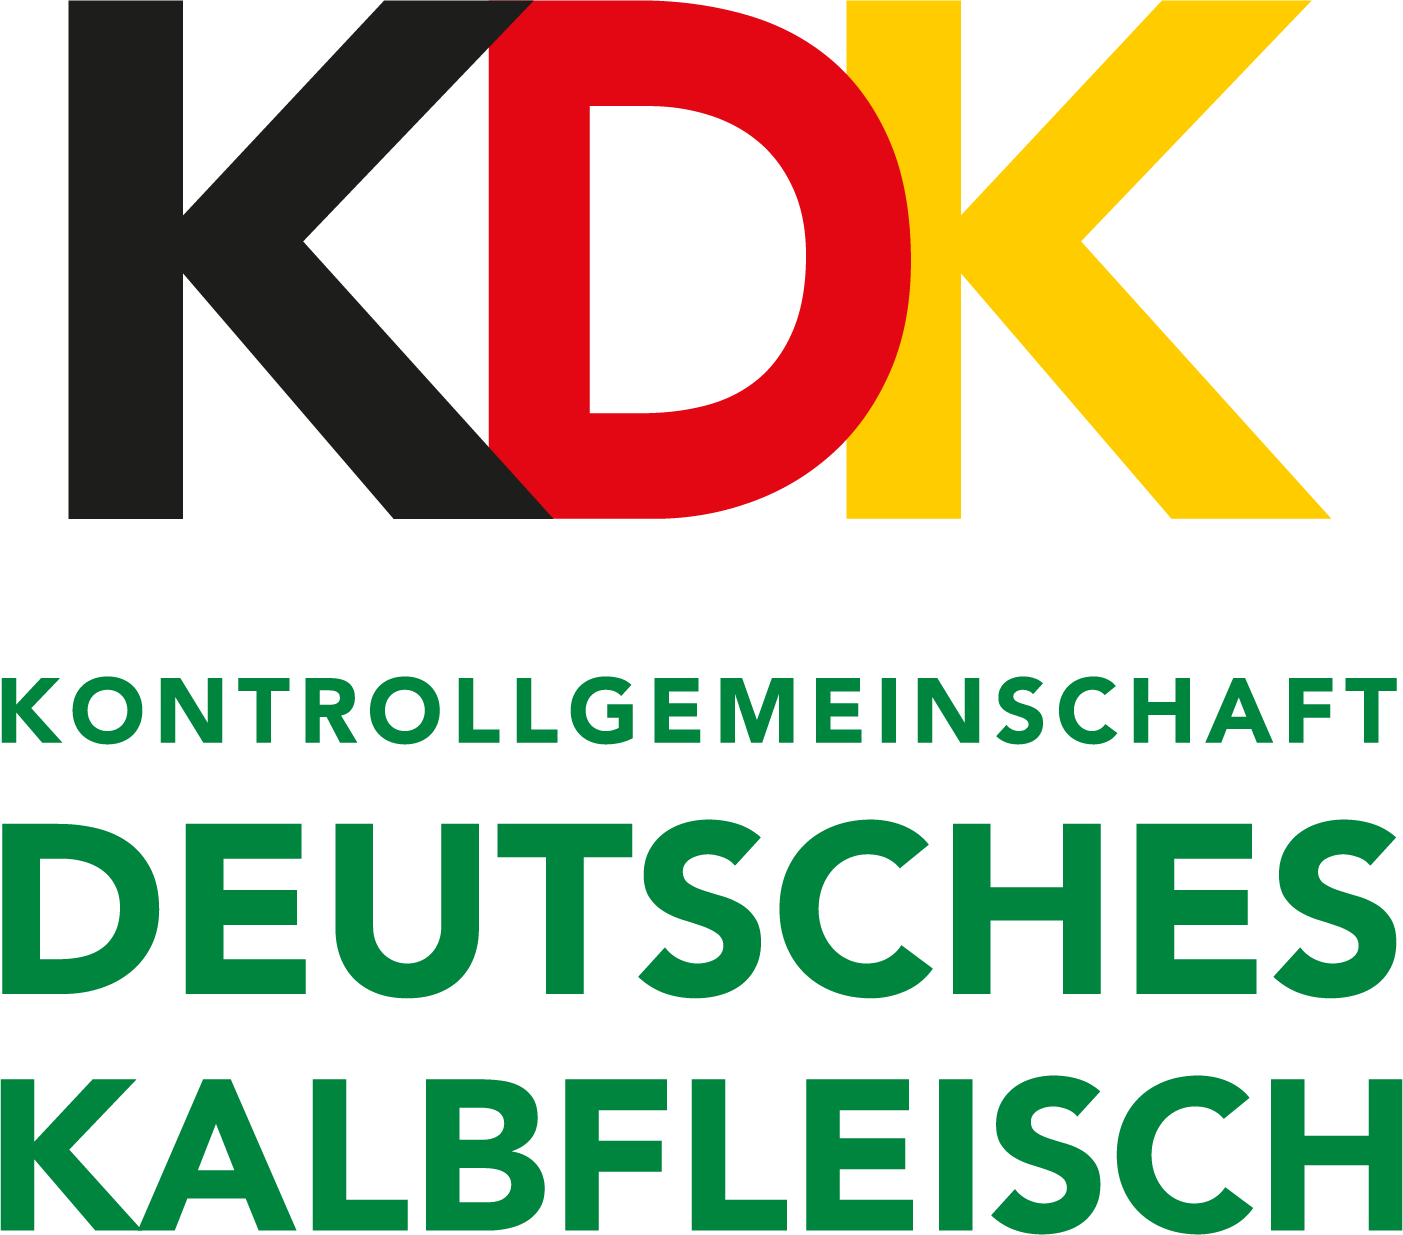 KDK Logo Rebranding 04 Dj V02